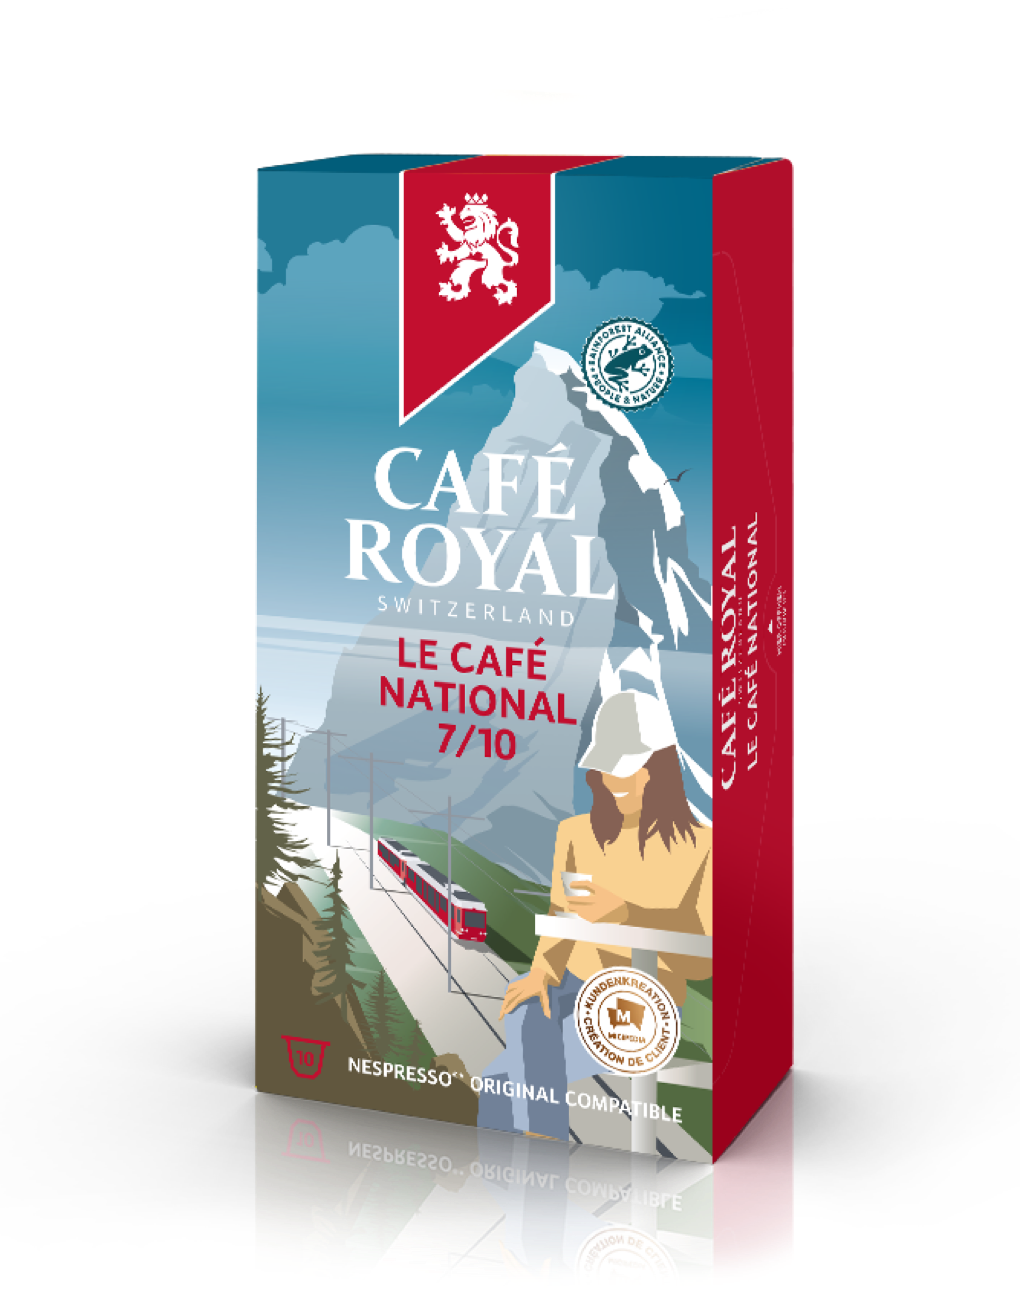 Café Royal Café National